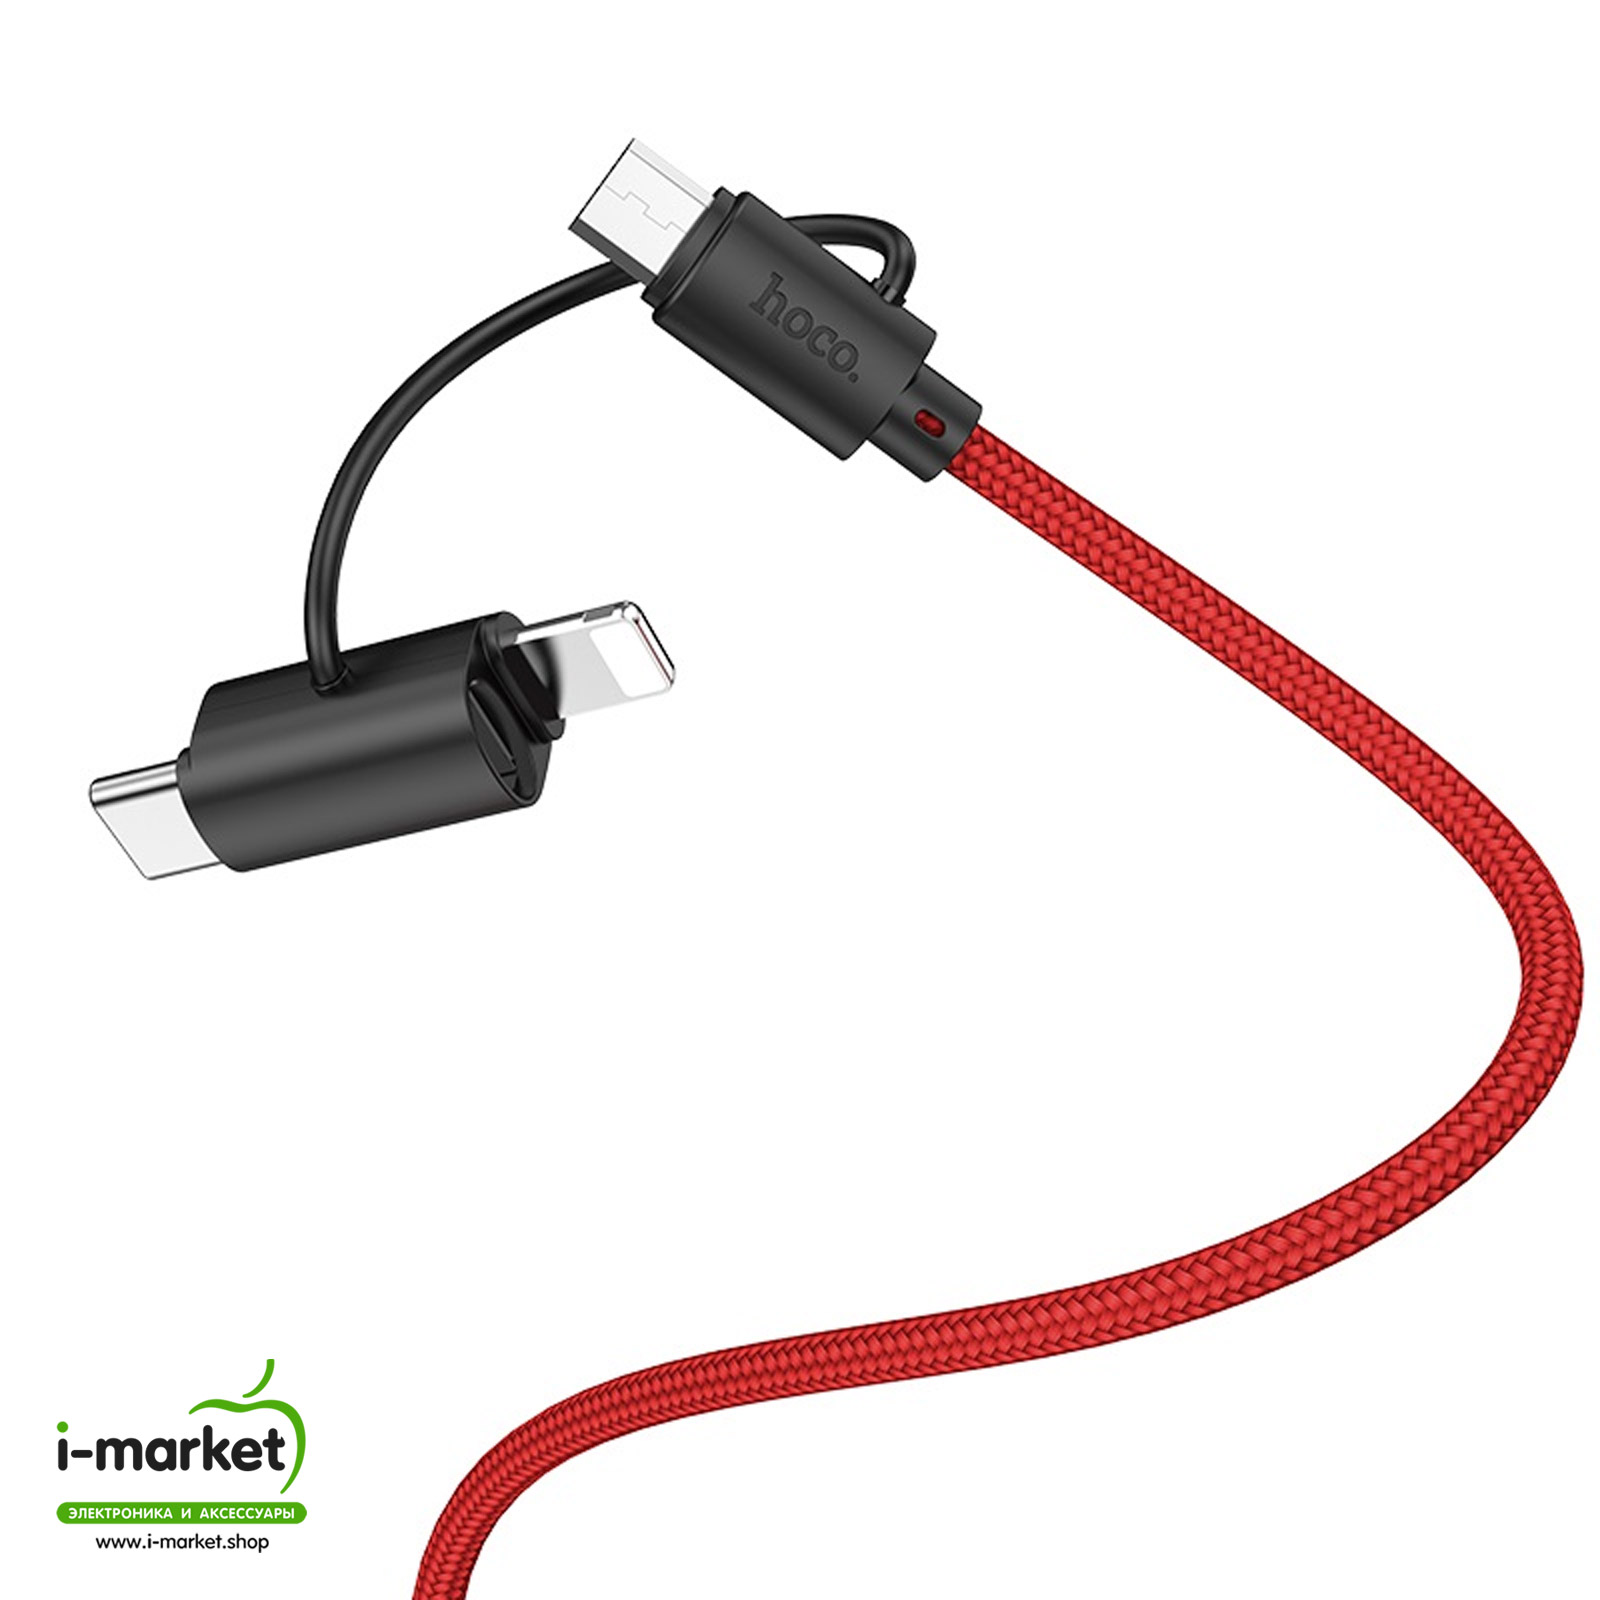 HOCO X41 Multi-way 3-в-1 зарядный дата кабель, длина 1 метр, TPE коннекторы и нейлоновая оплетка, цвет красный.